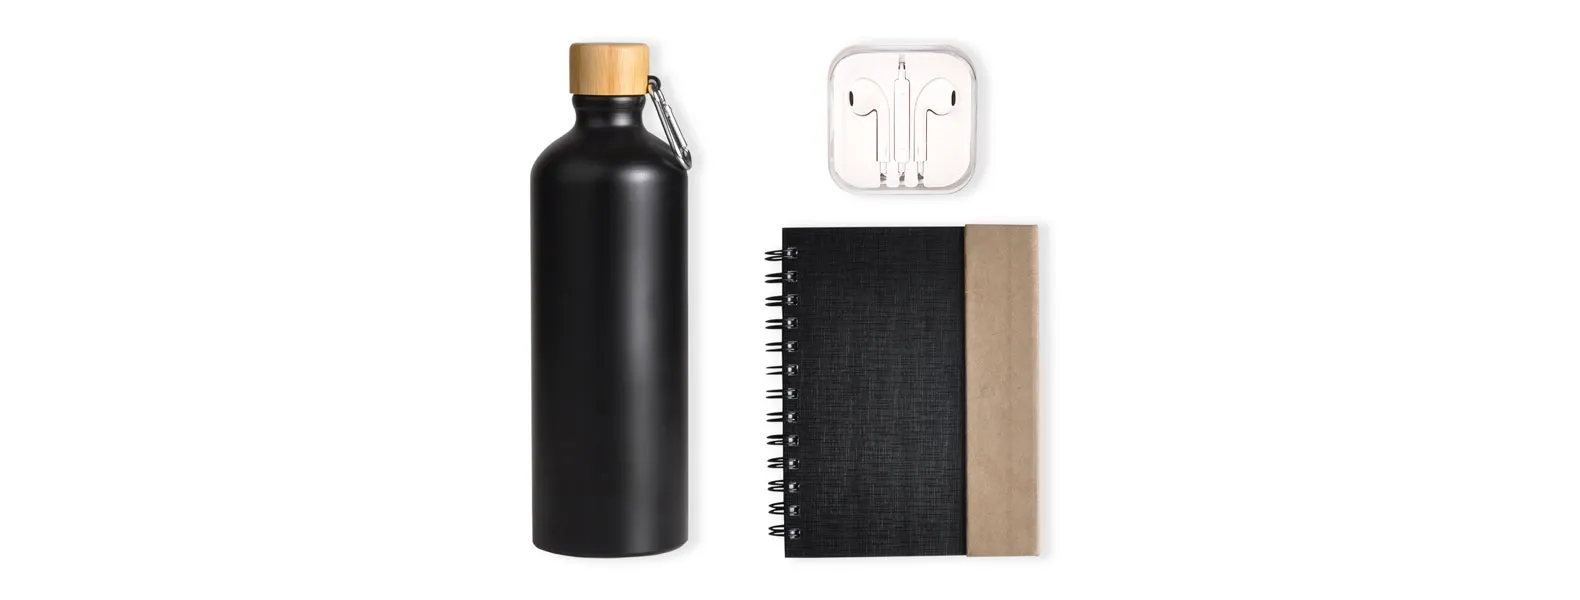 Conta com garrafa, caderno espiral preto/bege com capa, caneta em Papelão Reciclado rígido e fone de ouvido.